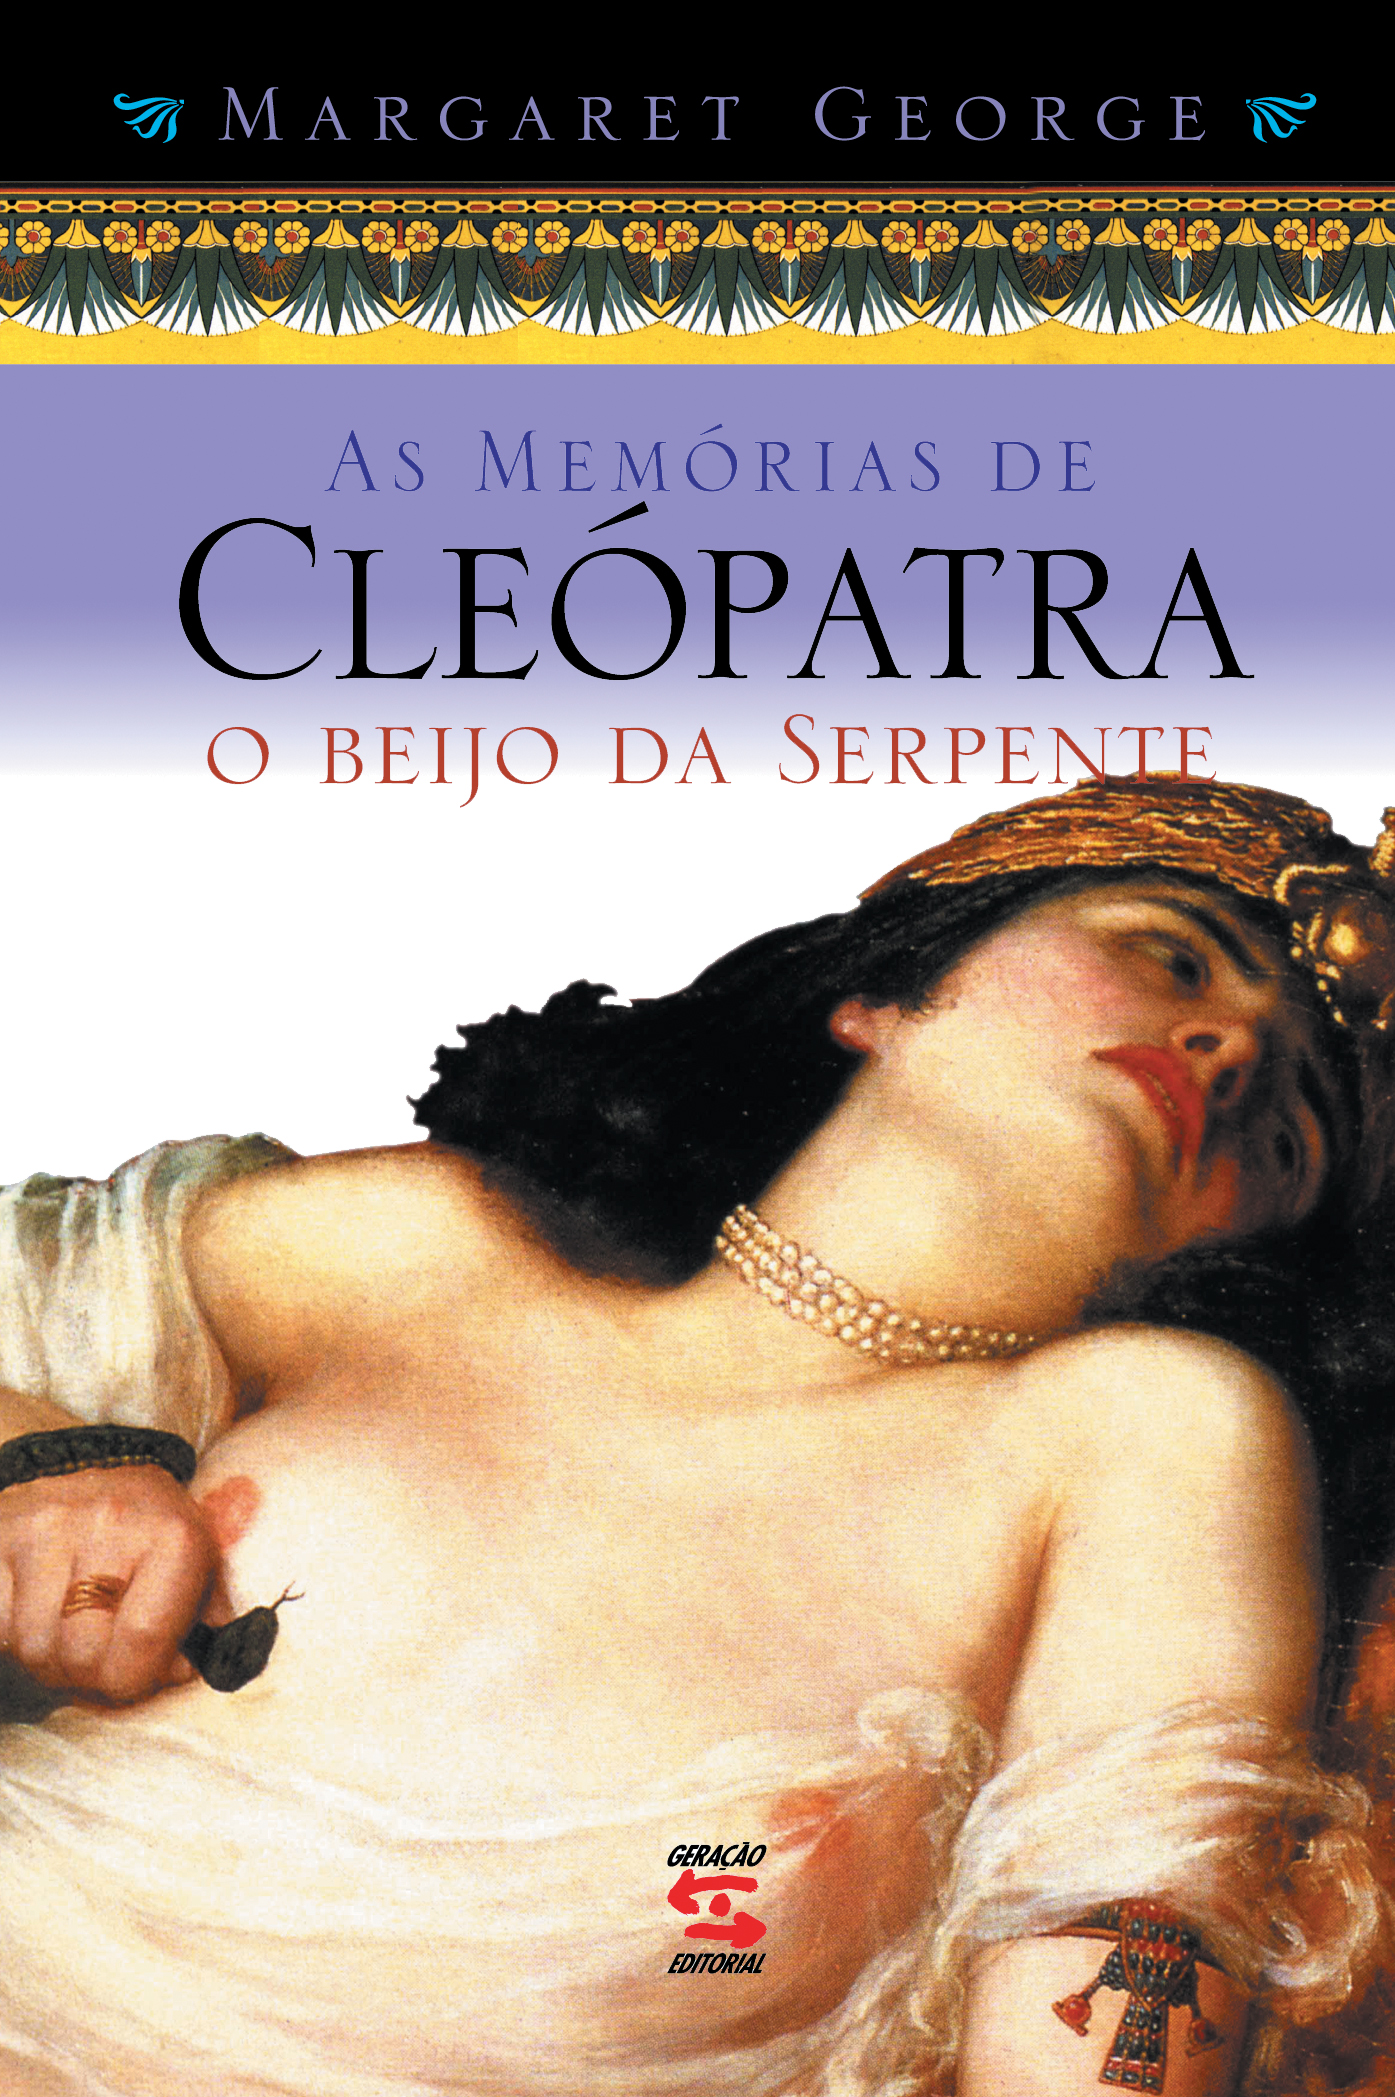 MEMORIAS DE CLEOPATRA, AS - VOL. 3 - O BEIJO DA SERPENTE, livro de GEORGE, MARGARET 